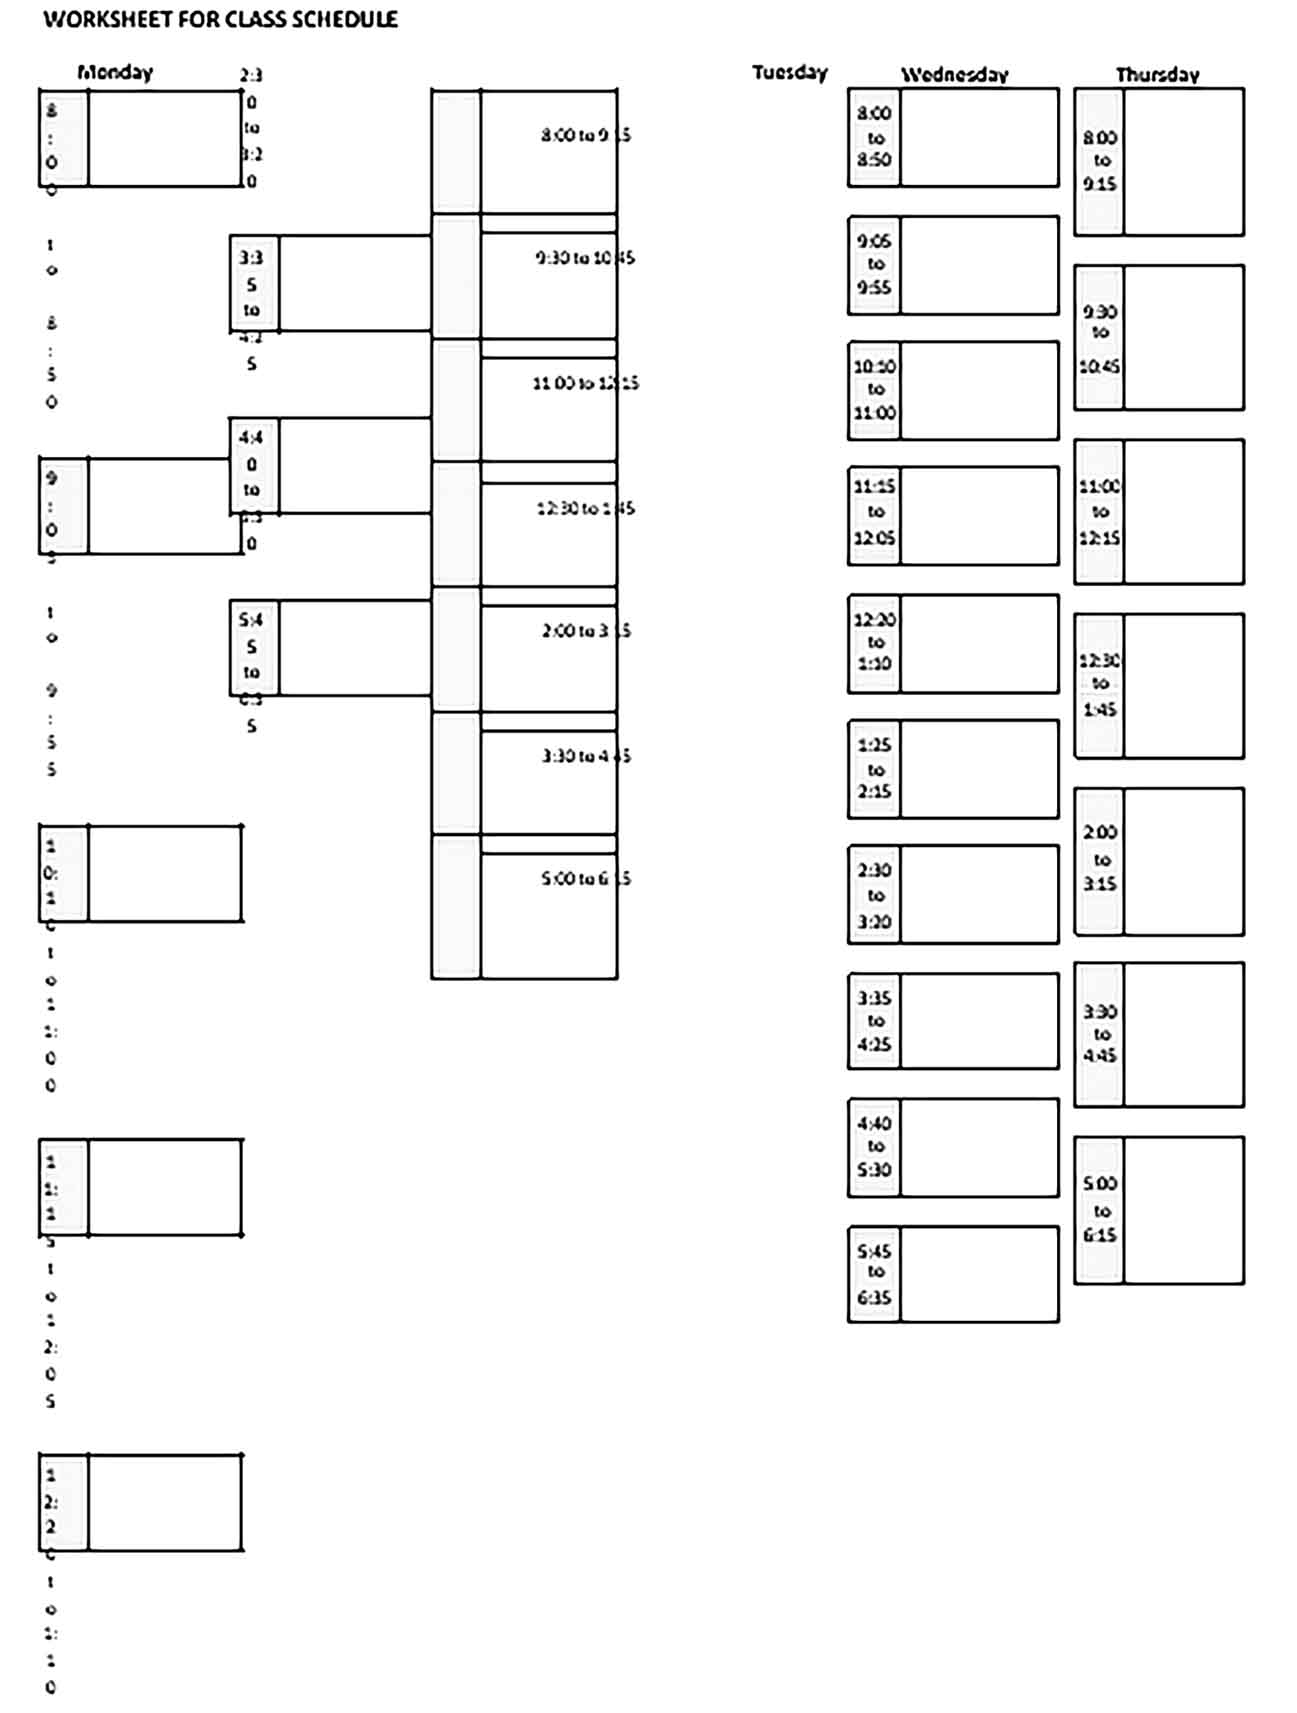 Template Blank School Schedule Printable Sample